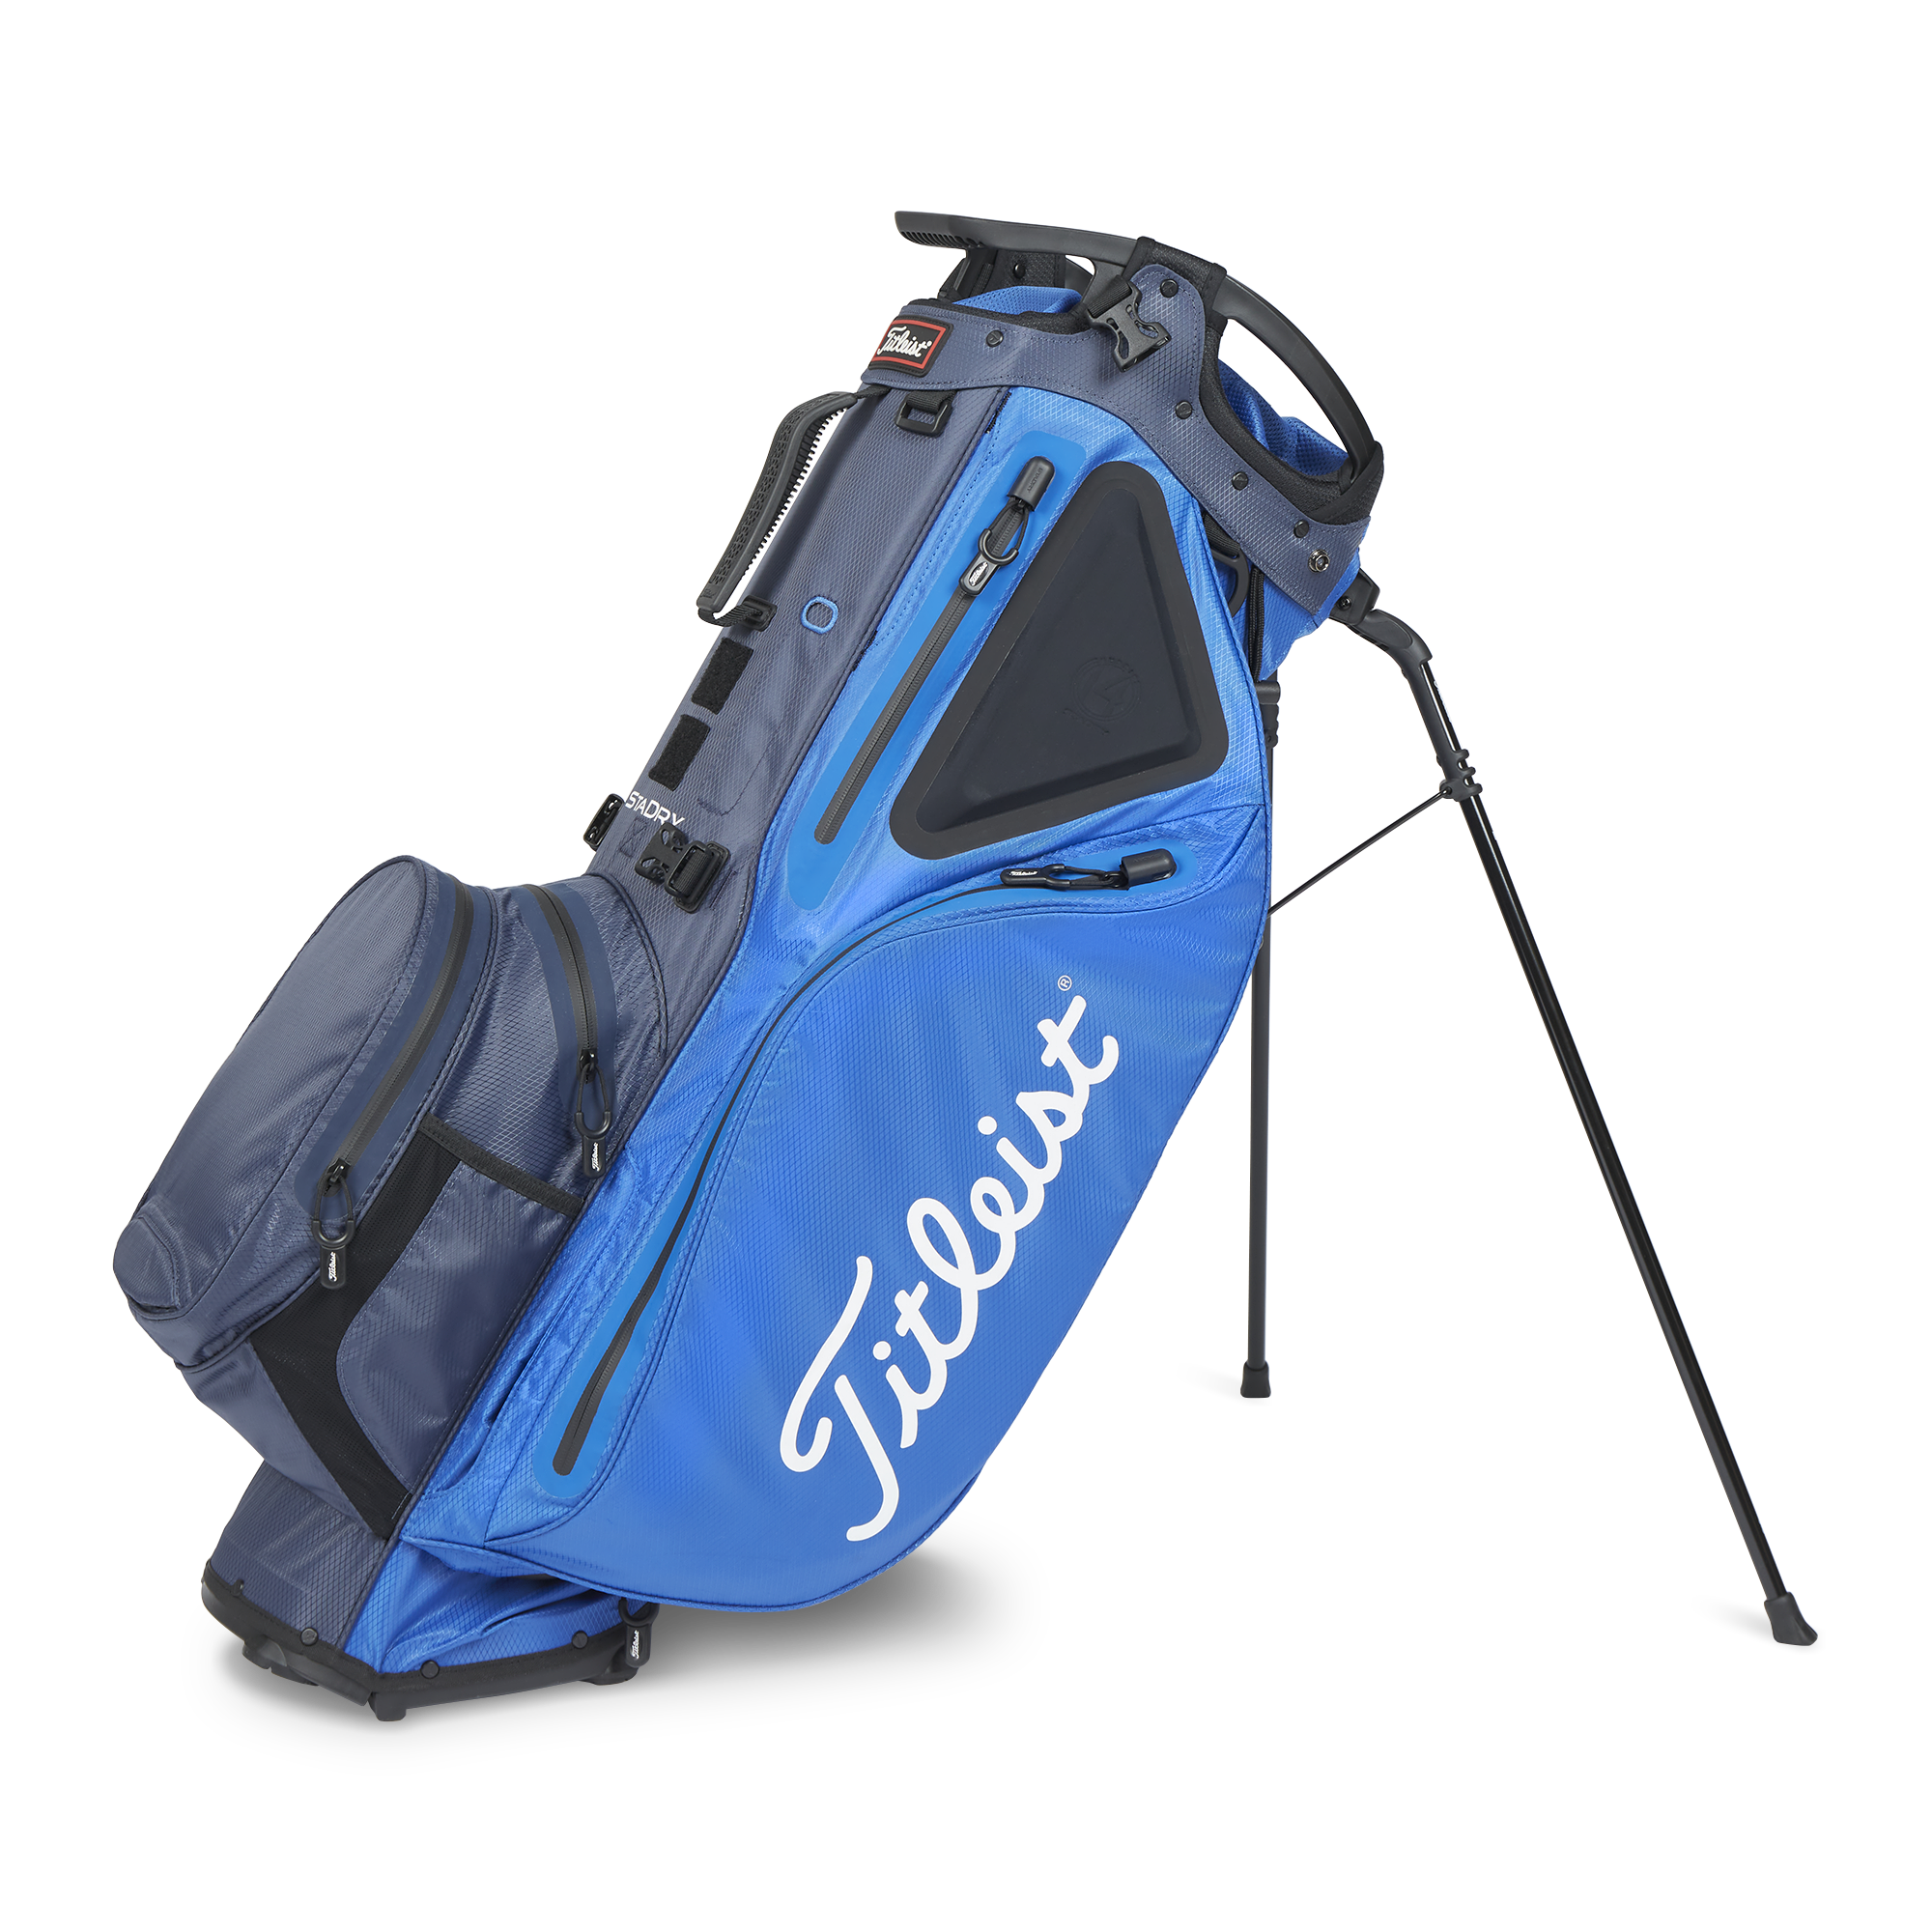 Titleist Hybrid 14 StaDry Stand bag, modrý/tmavě modrý DOPRODEJ